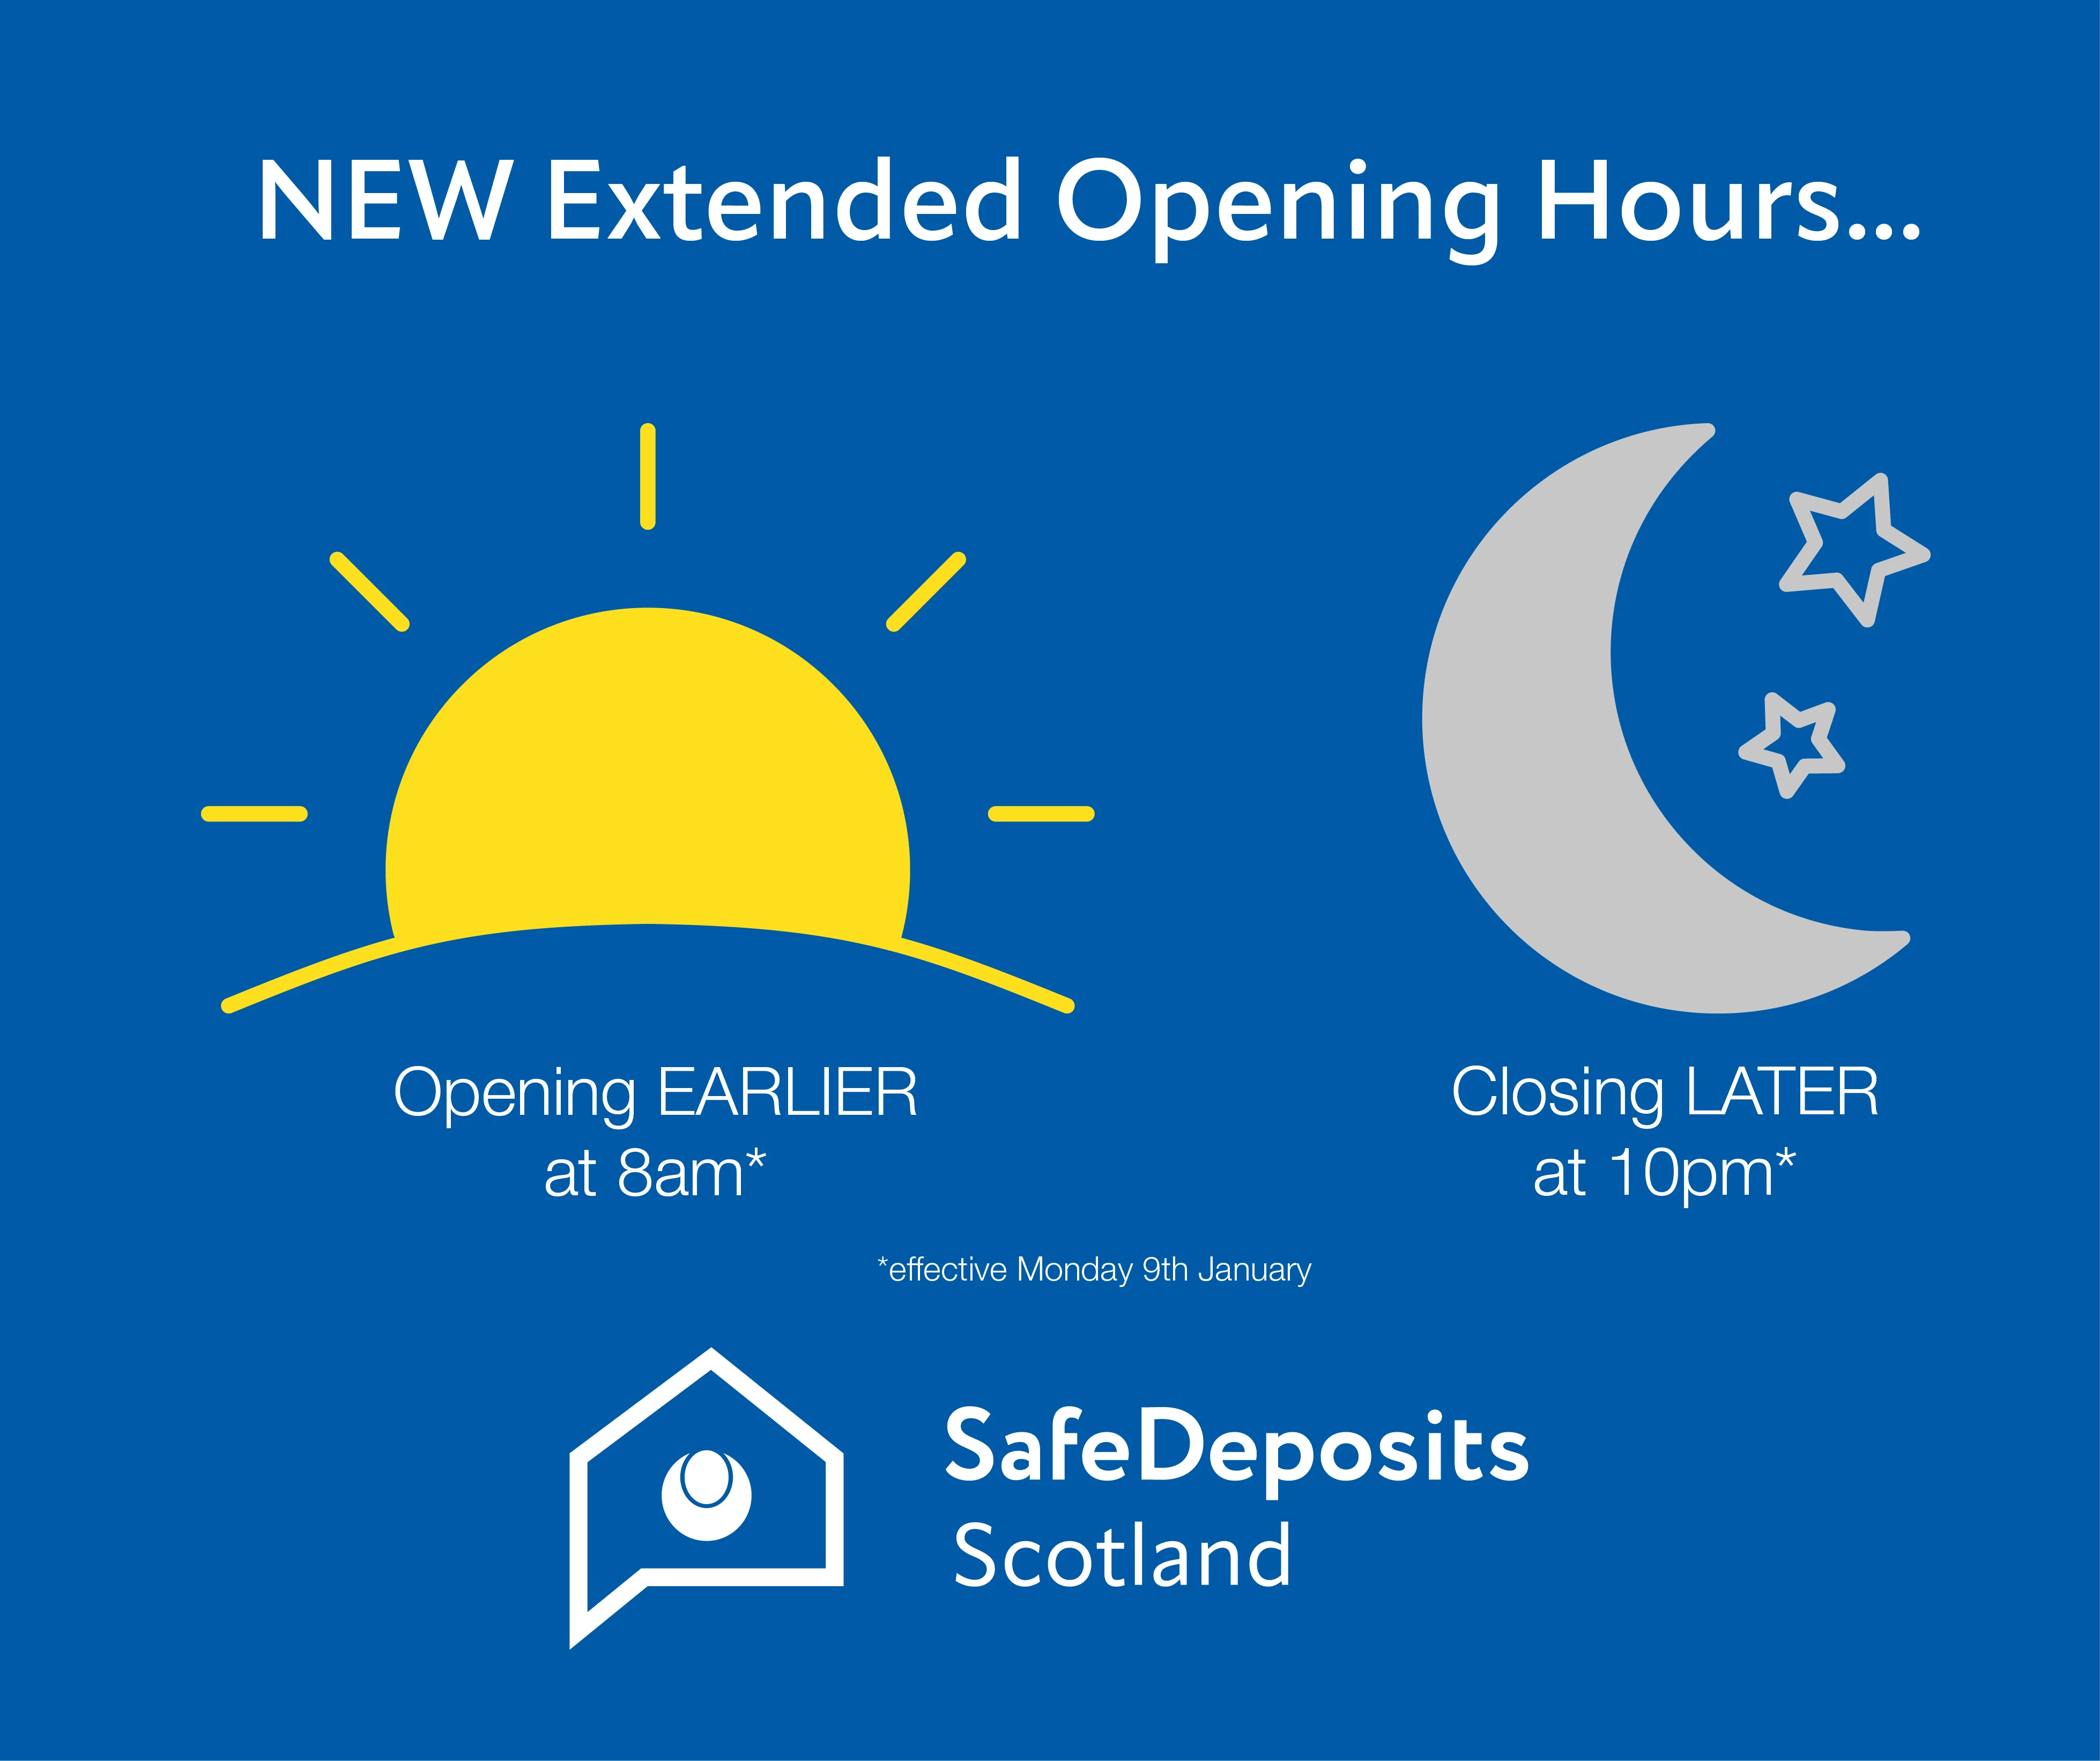 tenancy deposit scheme scotland - SafeDeposits Scotland